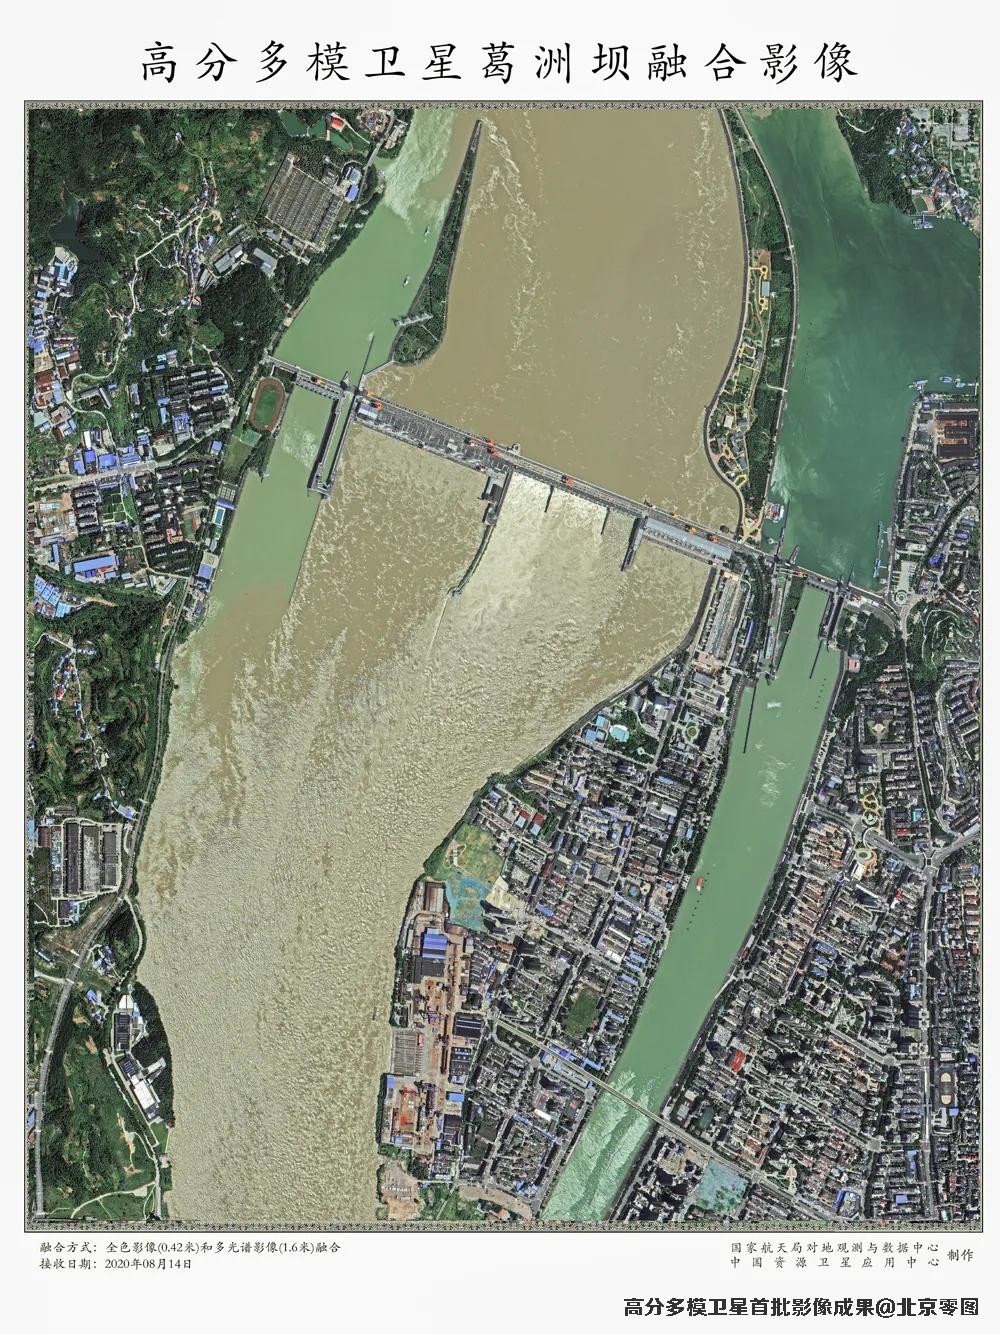 高分多模卫星拍摄的兰州雁滩黄河大桥